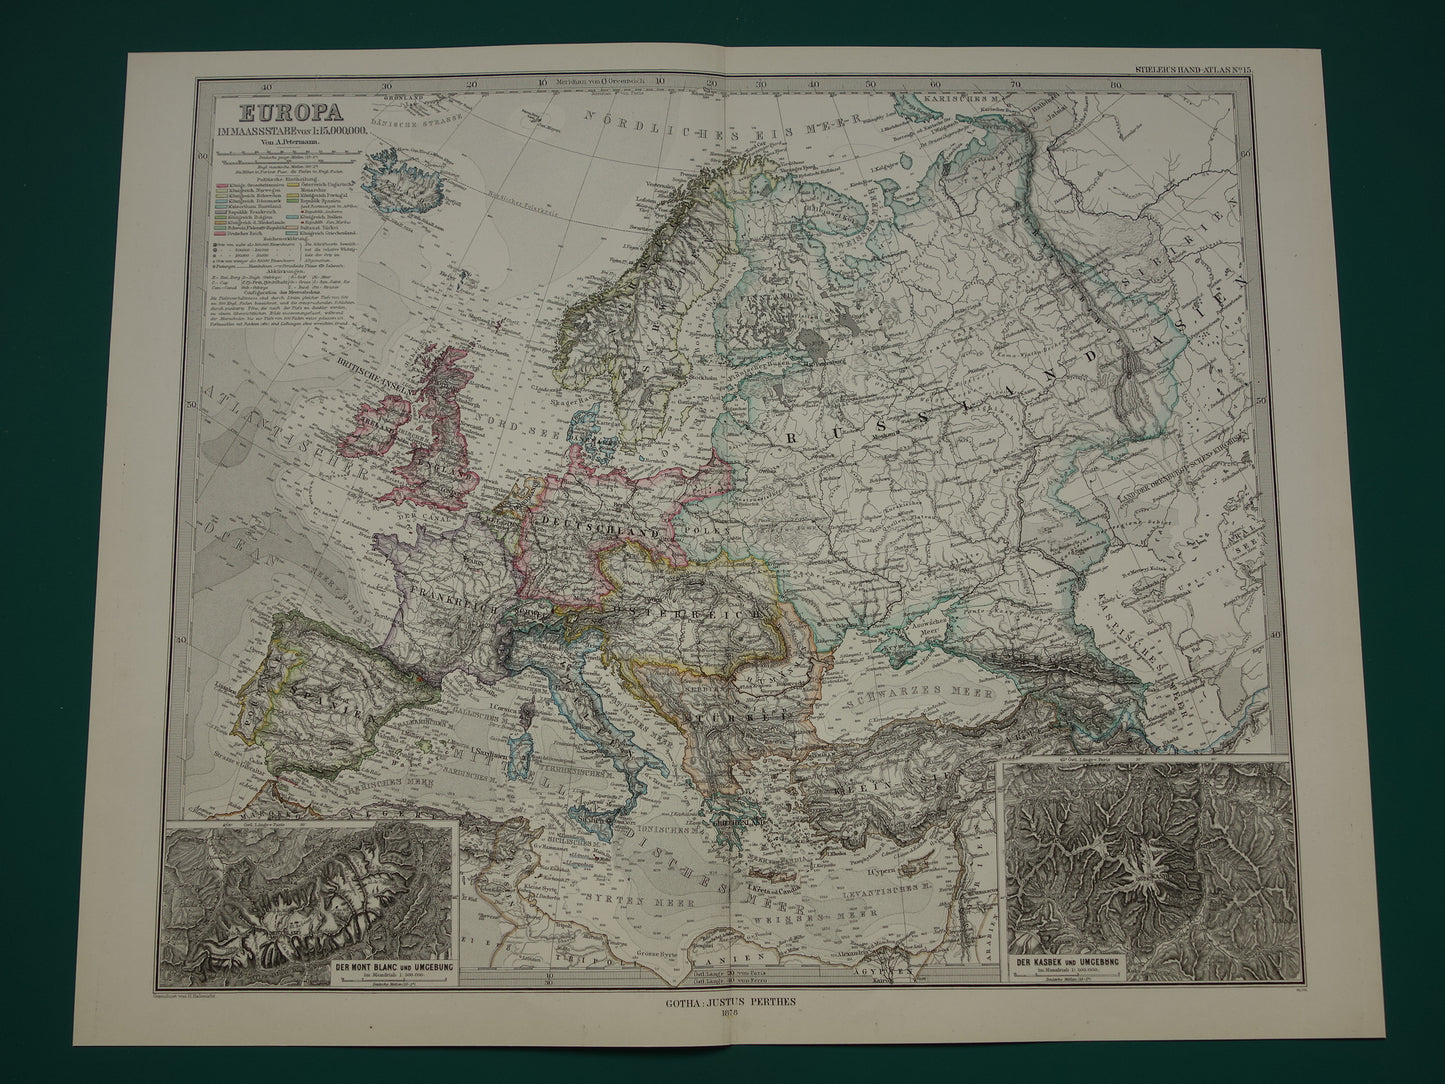 EUROPA oude landkaart van Europa uit 1878 originele antieke Duitse kaart van continent Europa